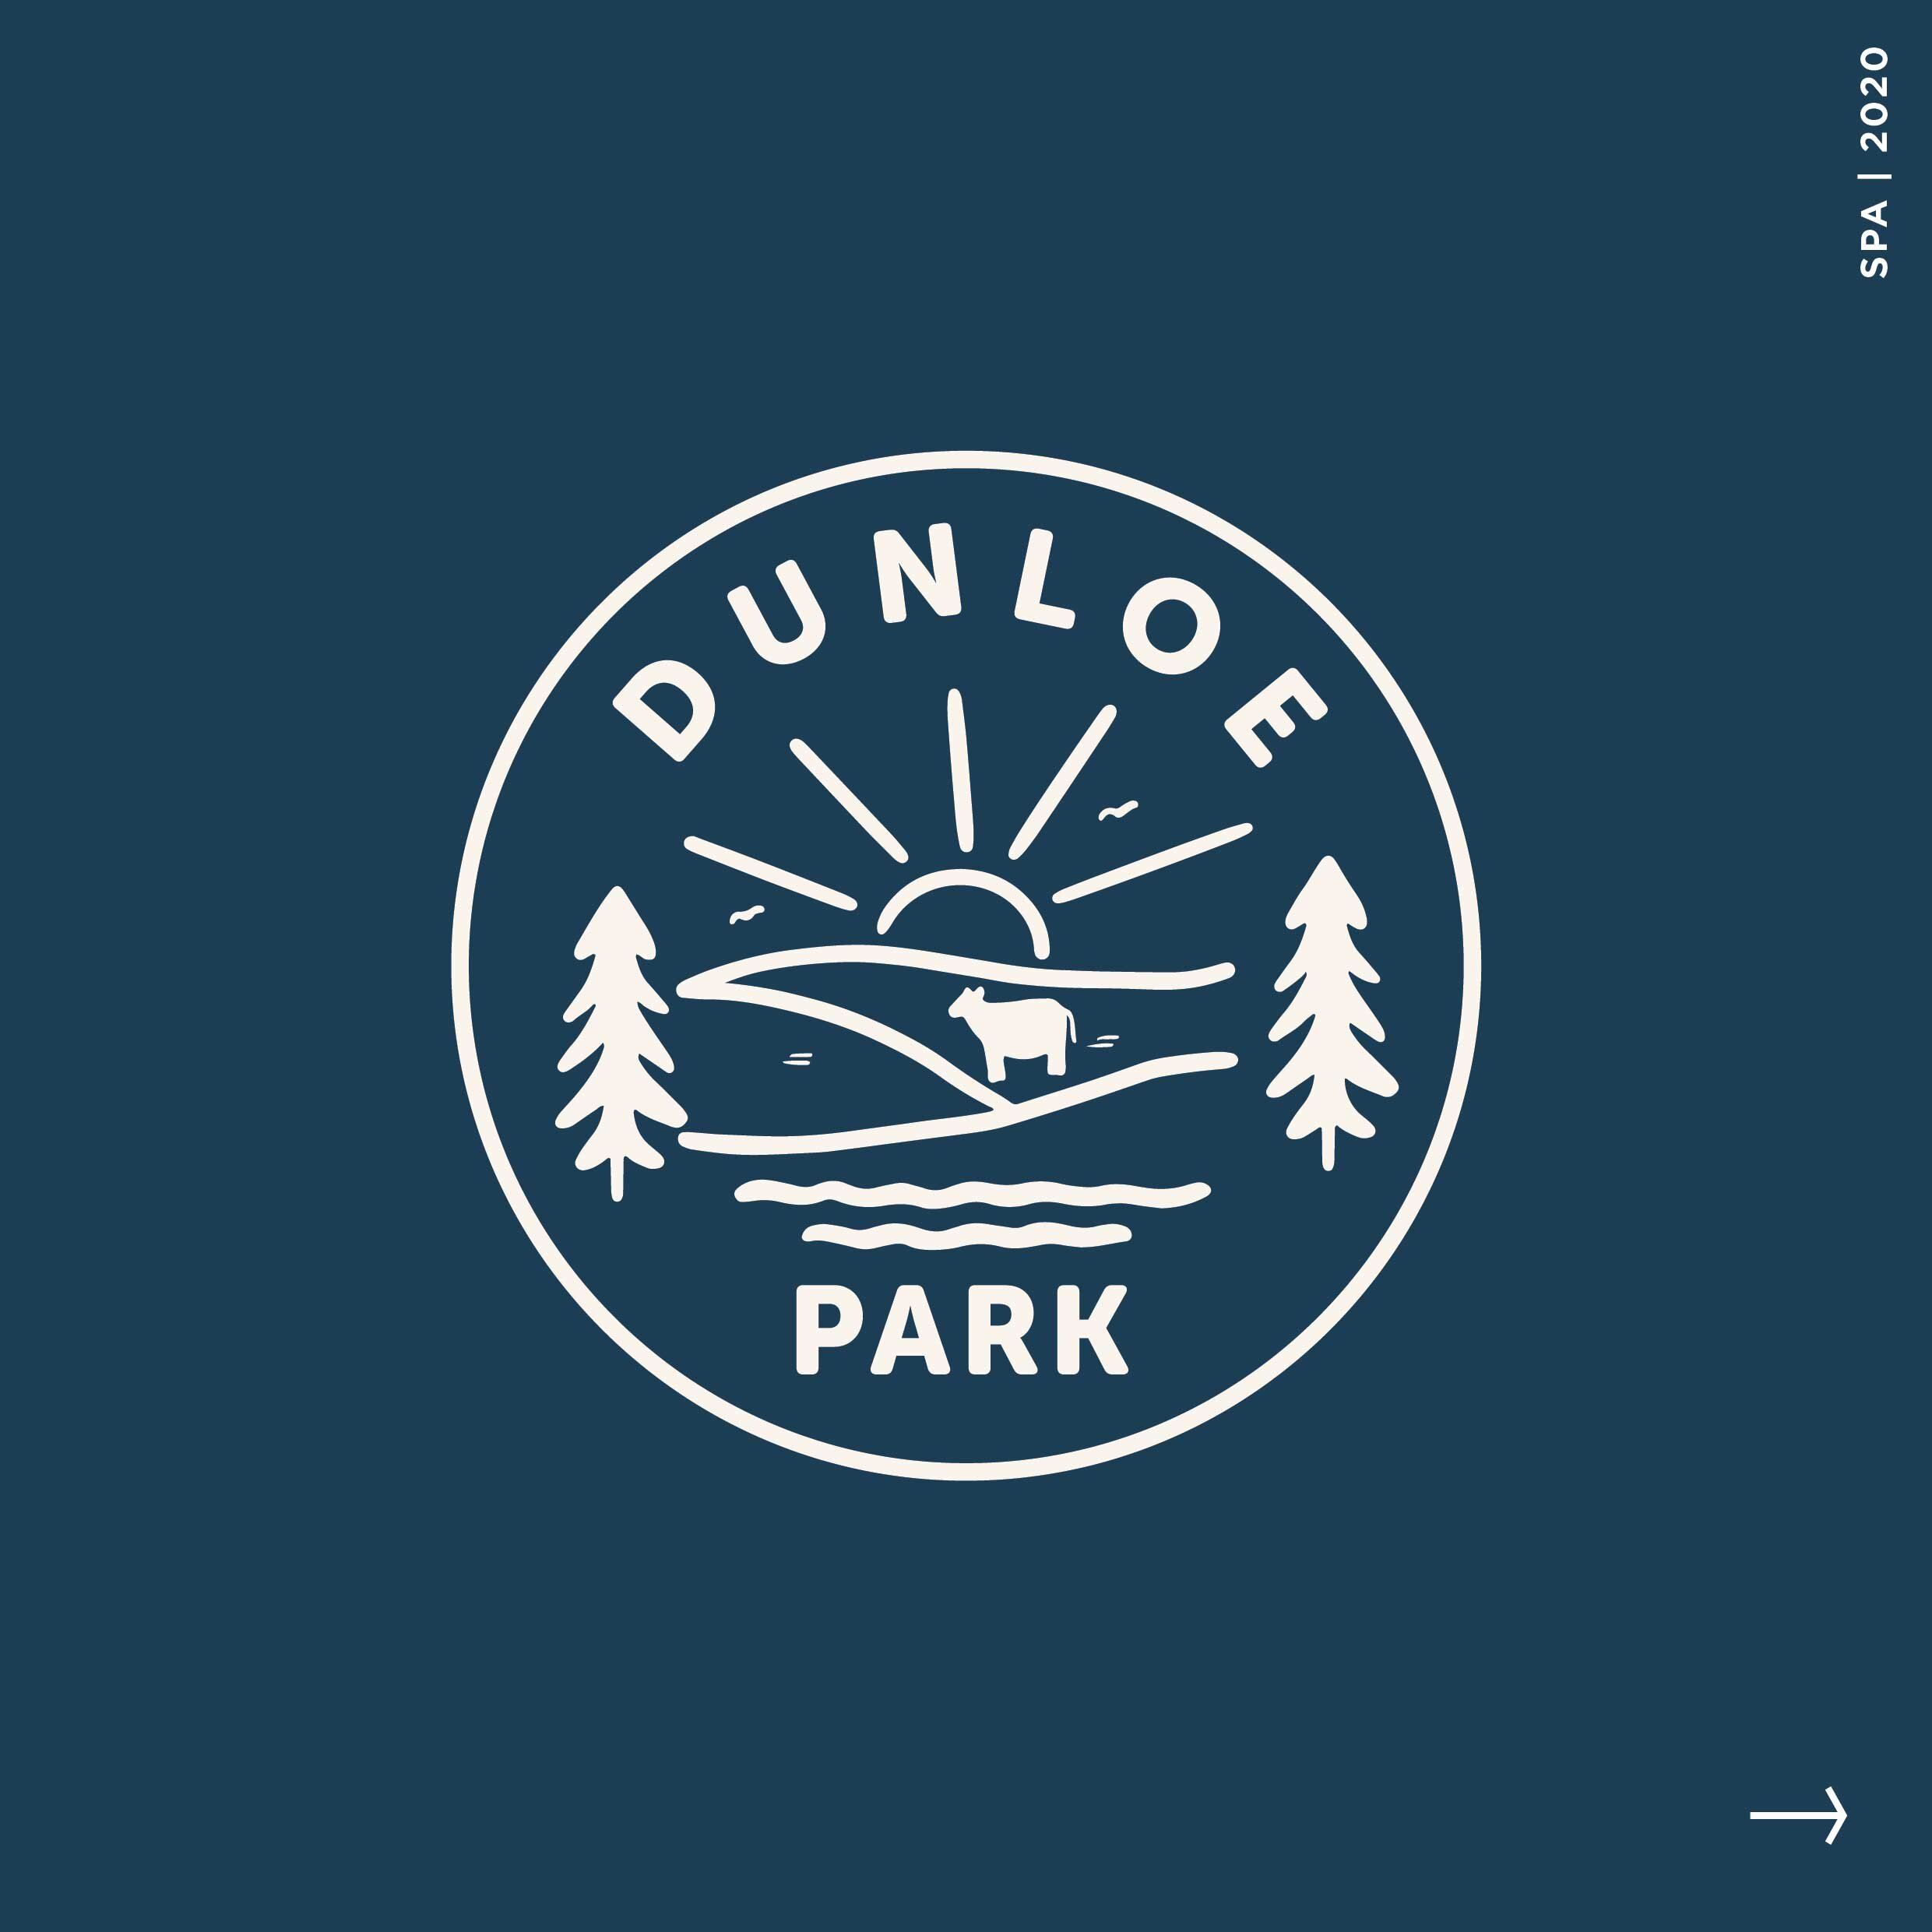 Dunloe Park_Carosel-02.jpg